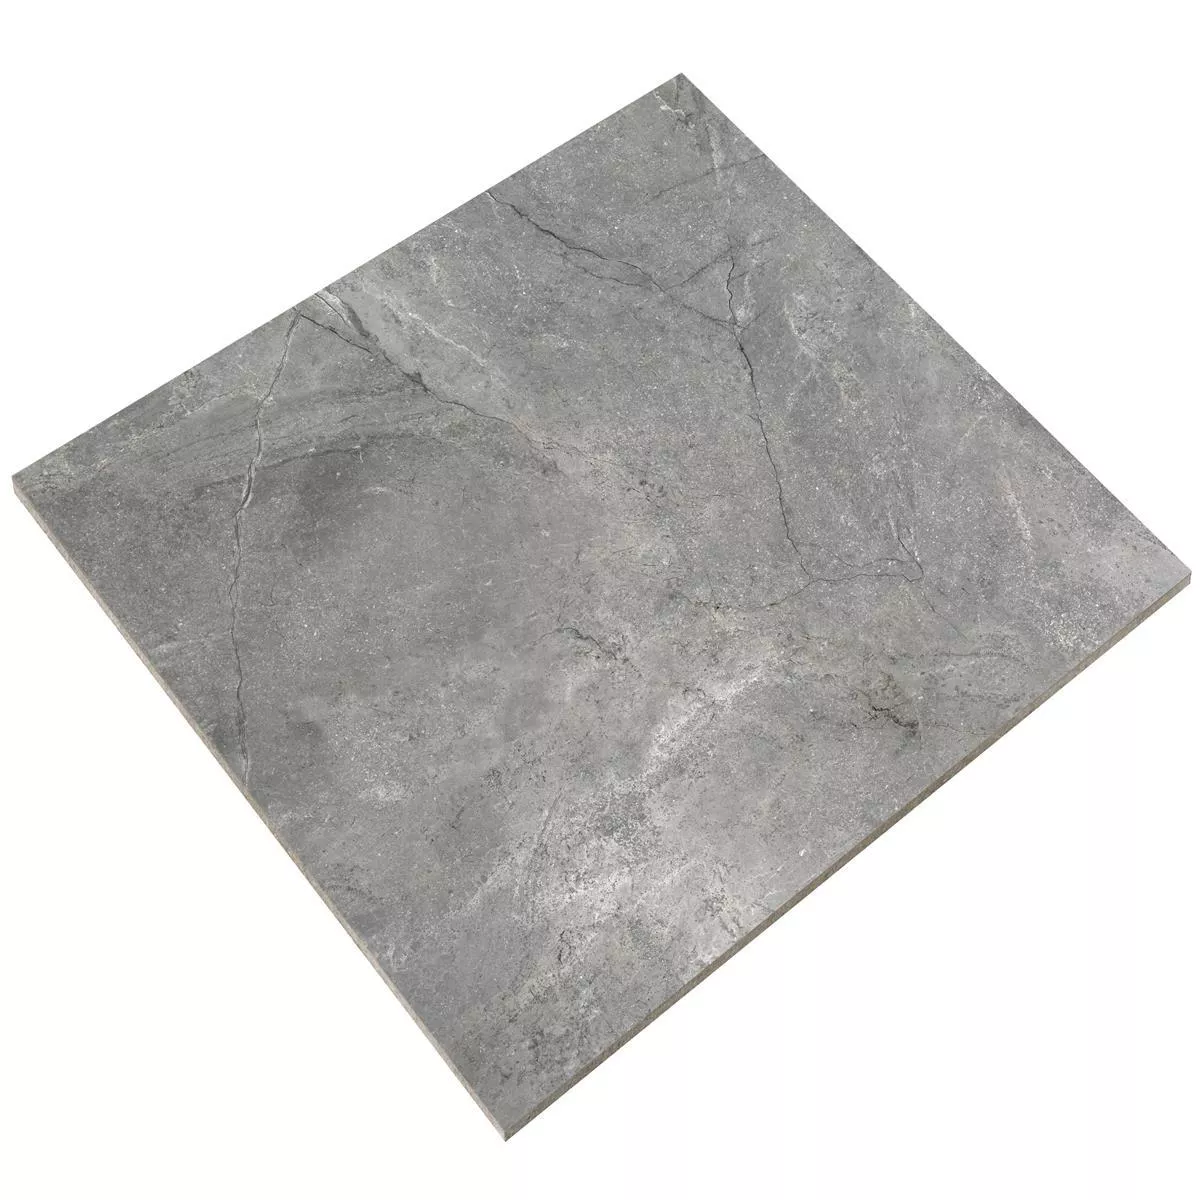 Sample Floor Tiles Pangea Marble Optic Mat Grey 120x120cm